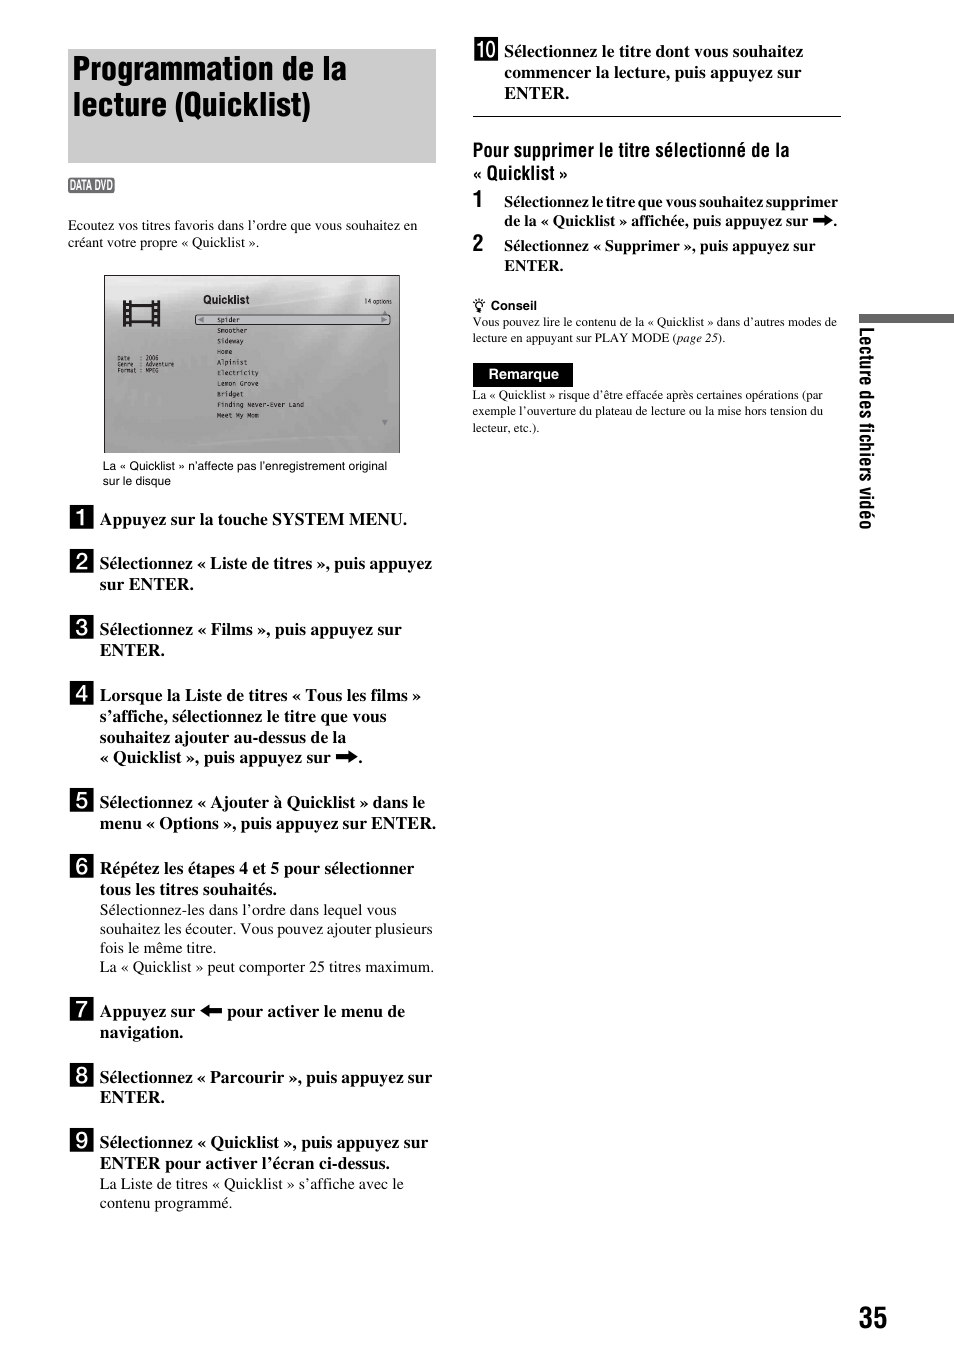 Programmation de la lecture (quicklist) | Sony BDP-S300 Manuel d'utilisation | Page 35 / 67